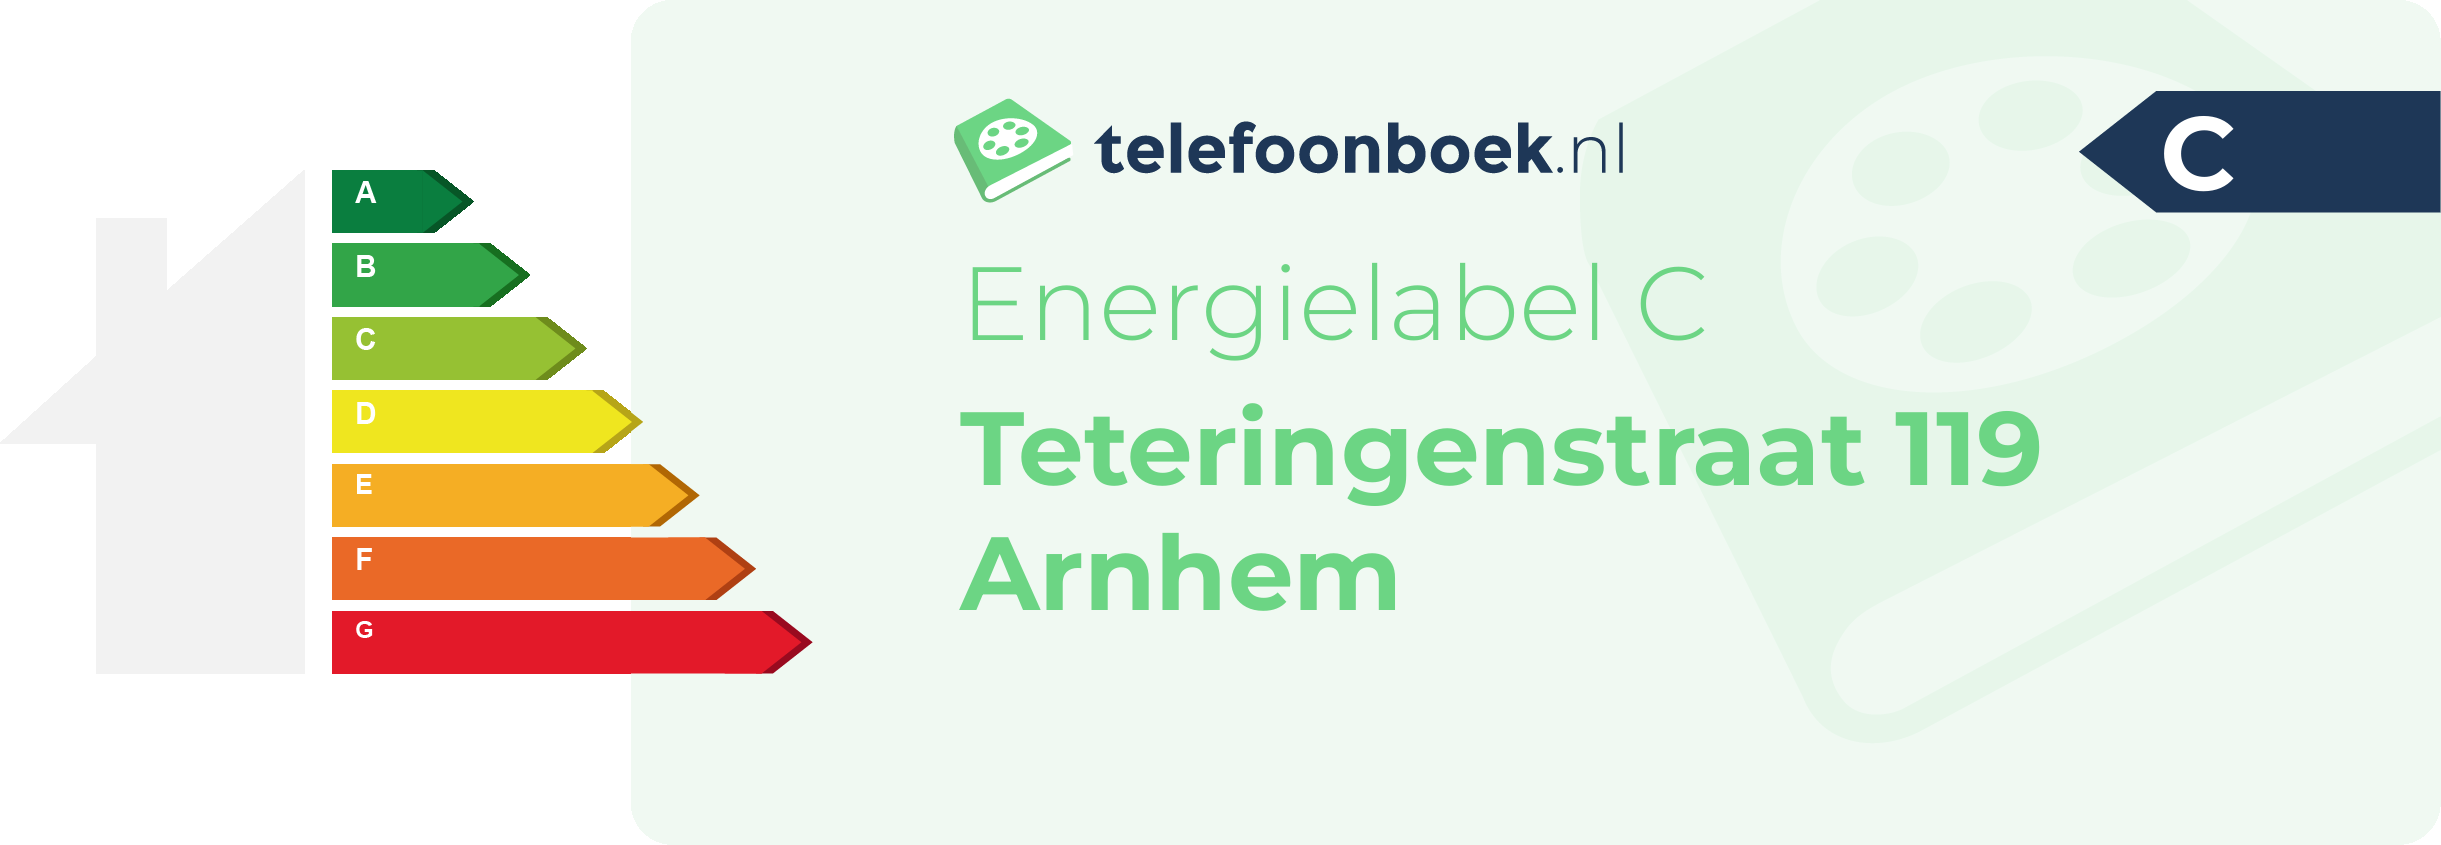 Energielabel Teteringenstraat 119 Arnhem